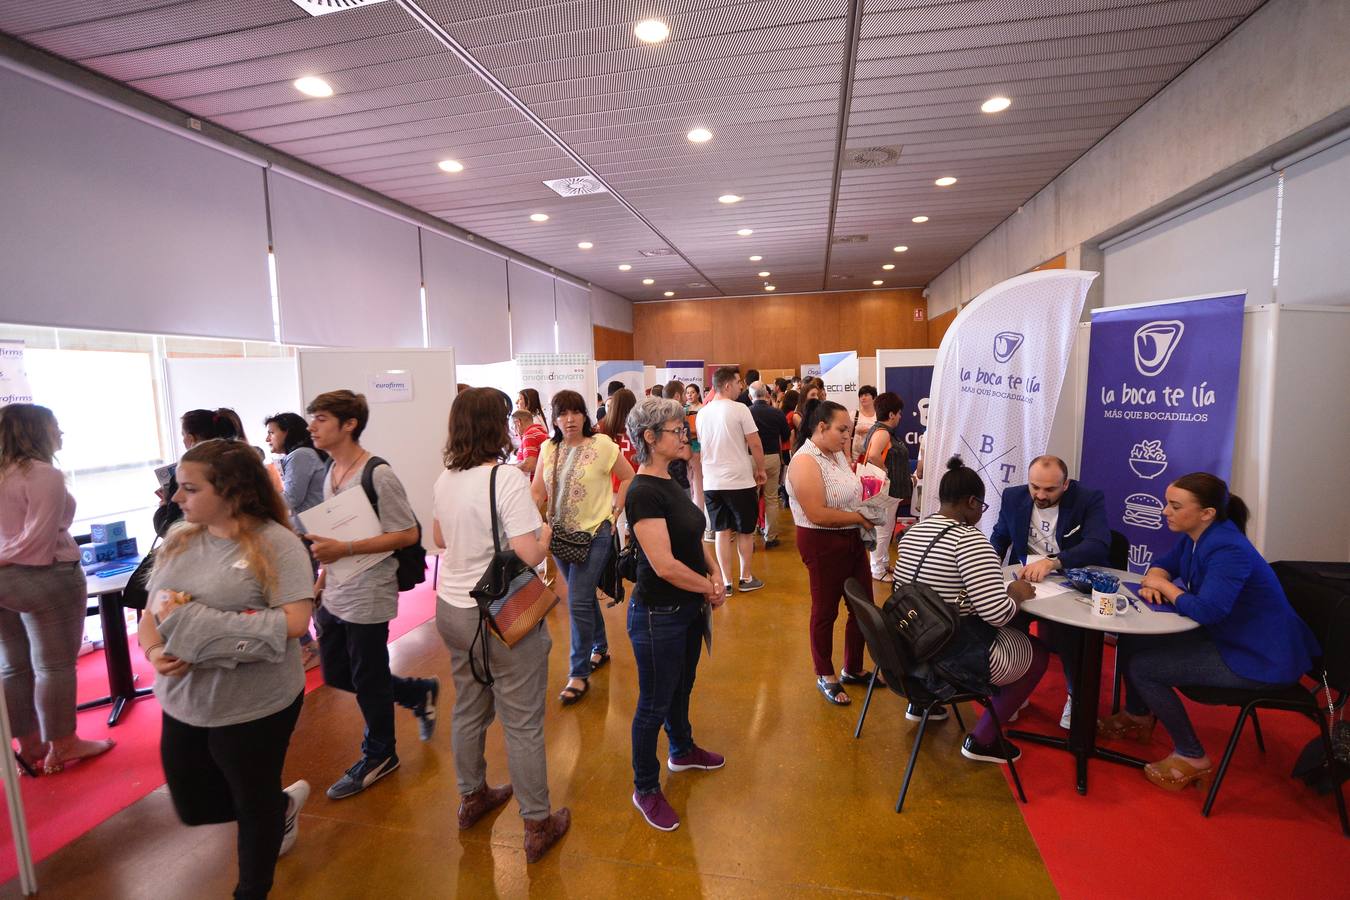 Cruz Roja celebró ayer el II Foro de Empleo en Murcia, con el que busca impulsar el talento, la empleabilidad y la igualdad de oportunidades en el mundo laboral.